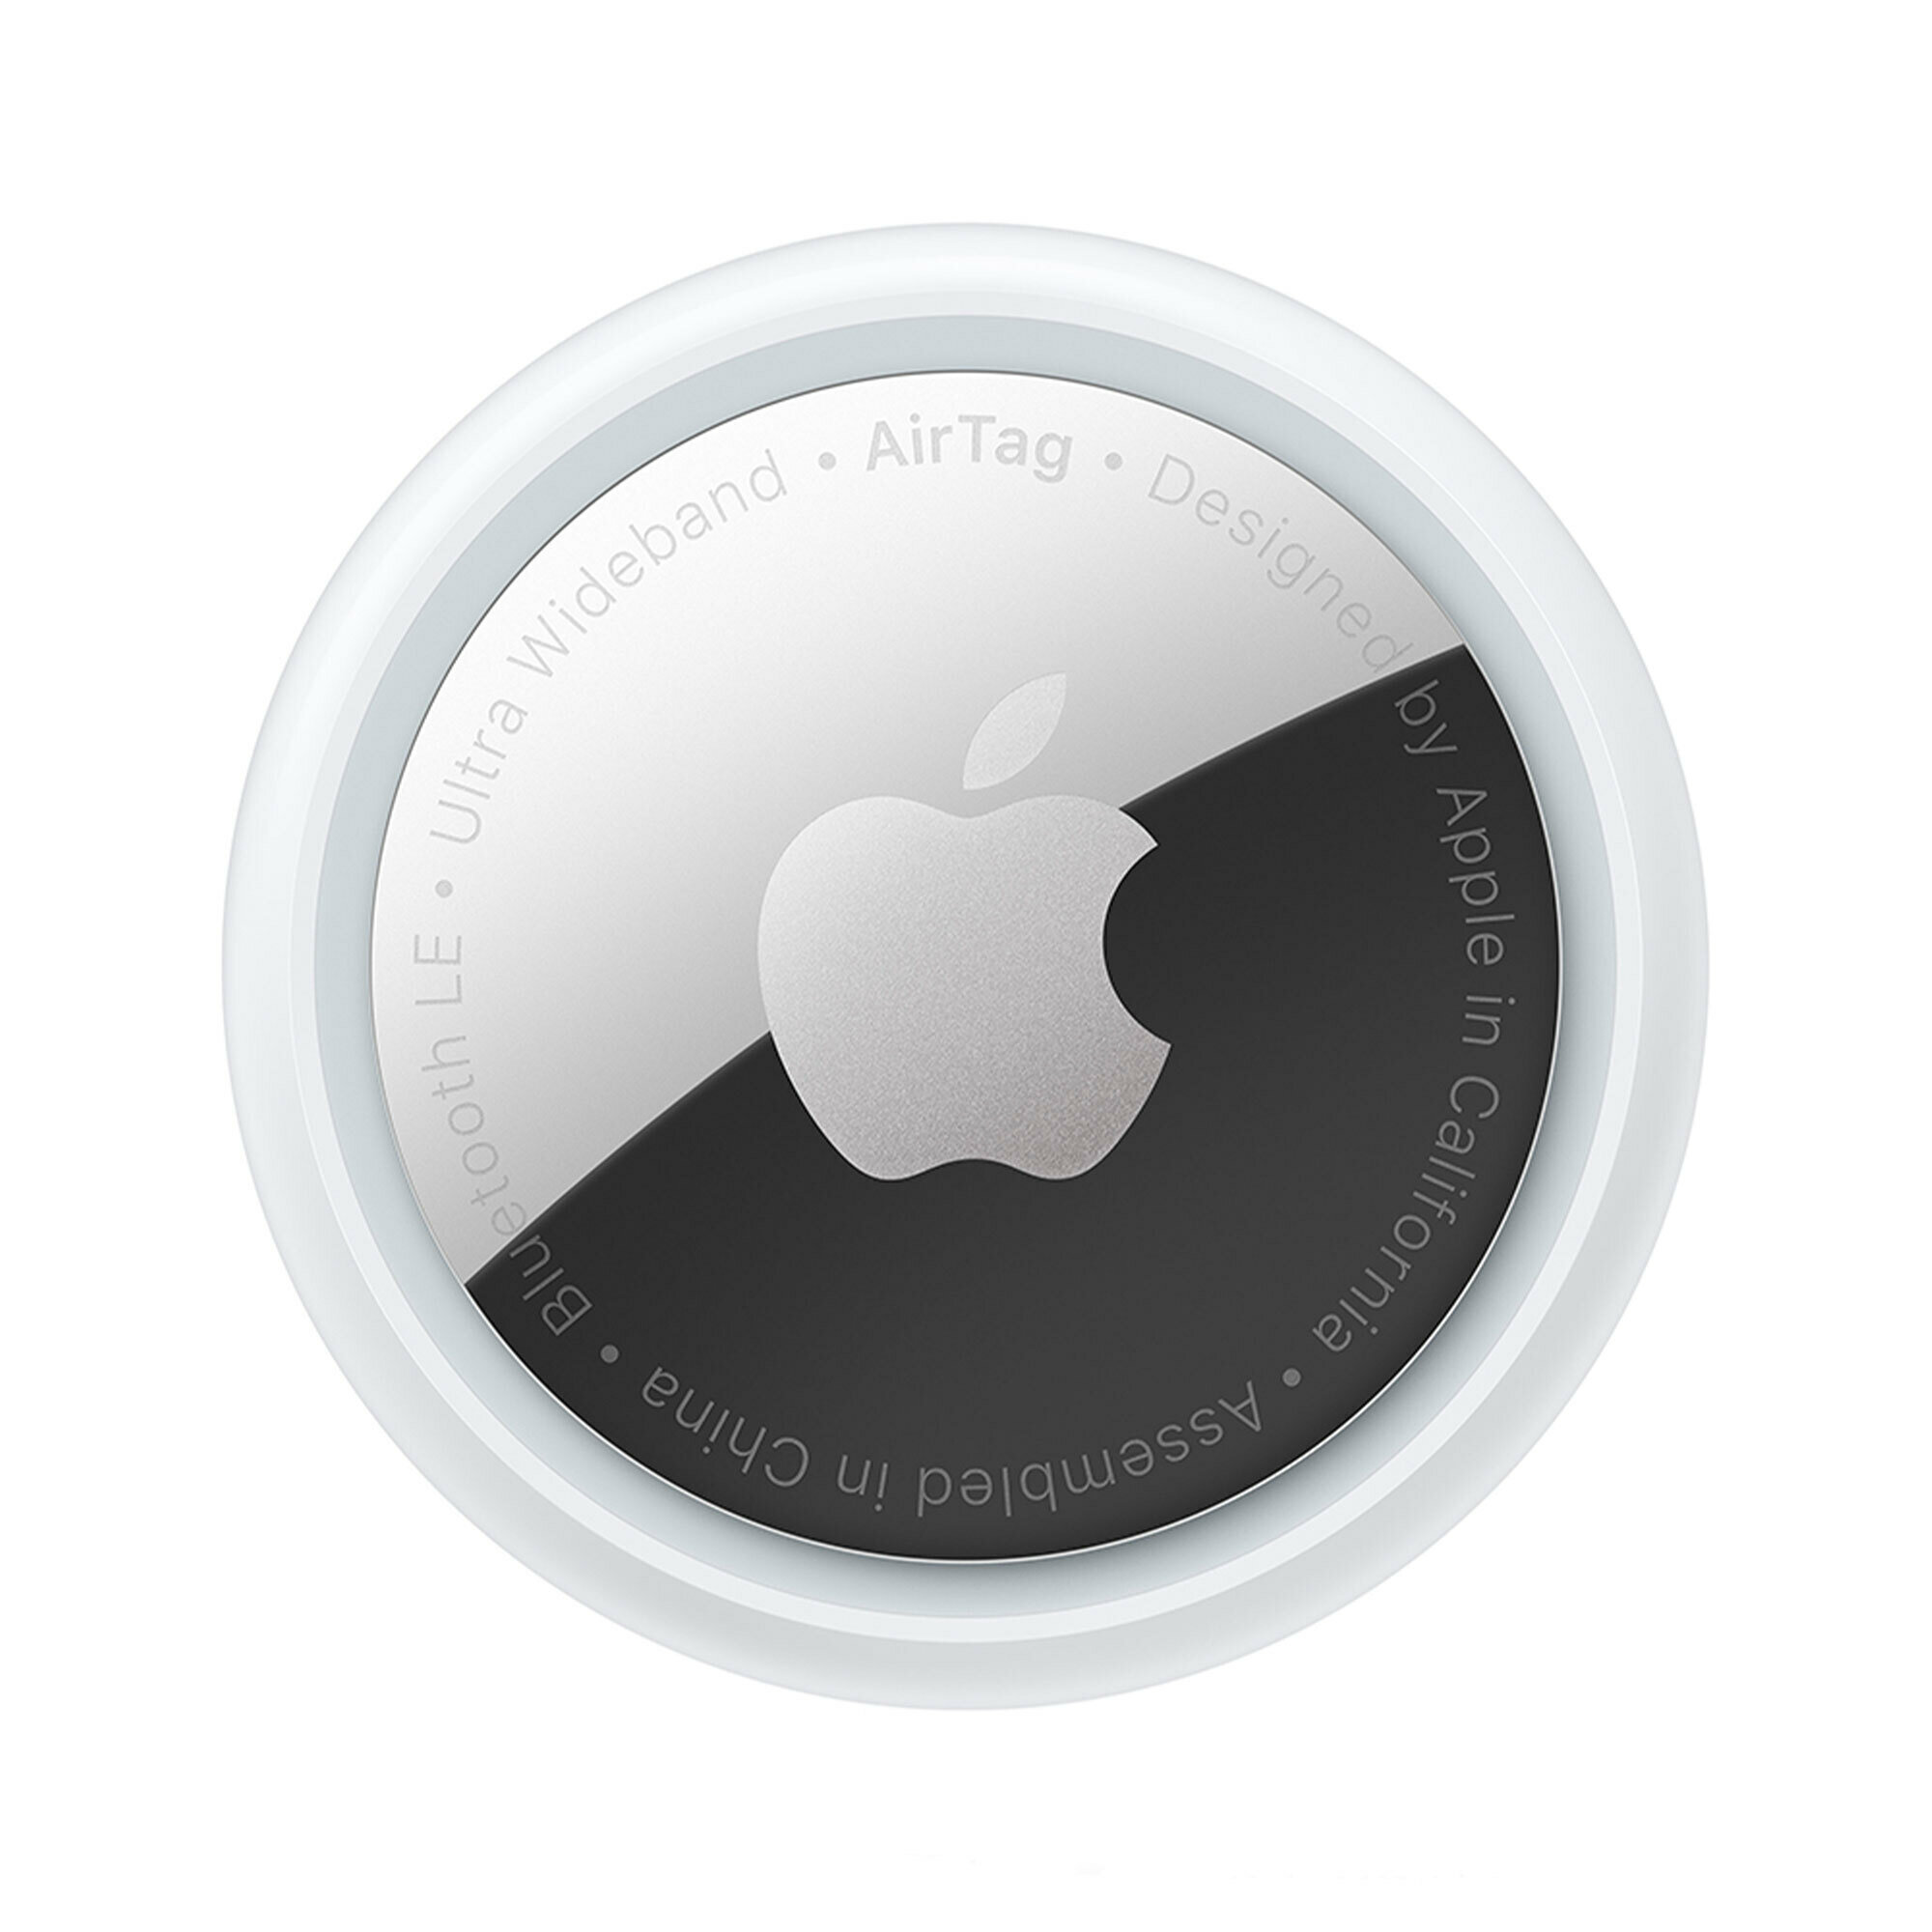 Трекер Apple AirTag модели iPhone и iPod touch с iOS 14.5 или новее; модели iPad с iPadOS 14.5 или новее 1 шт. из упаковки с 4 шт.белый/серебристый